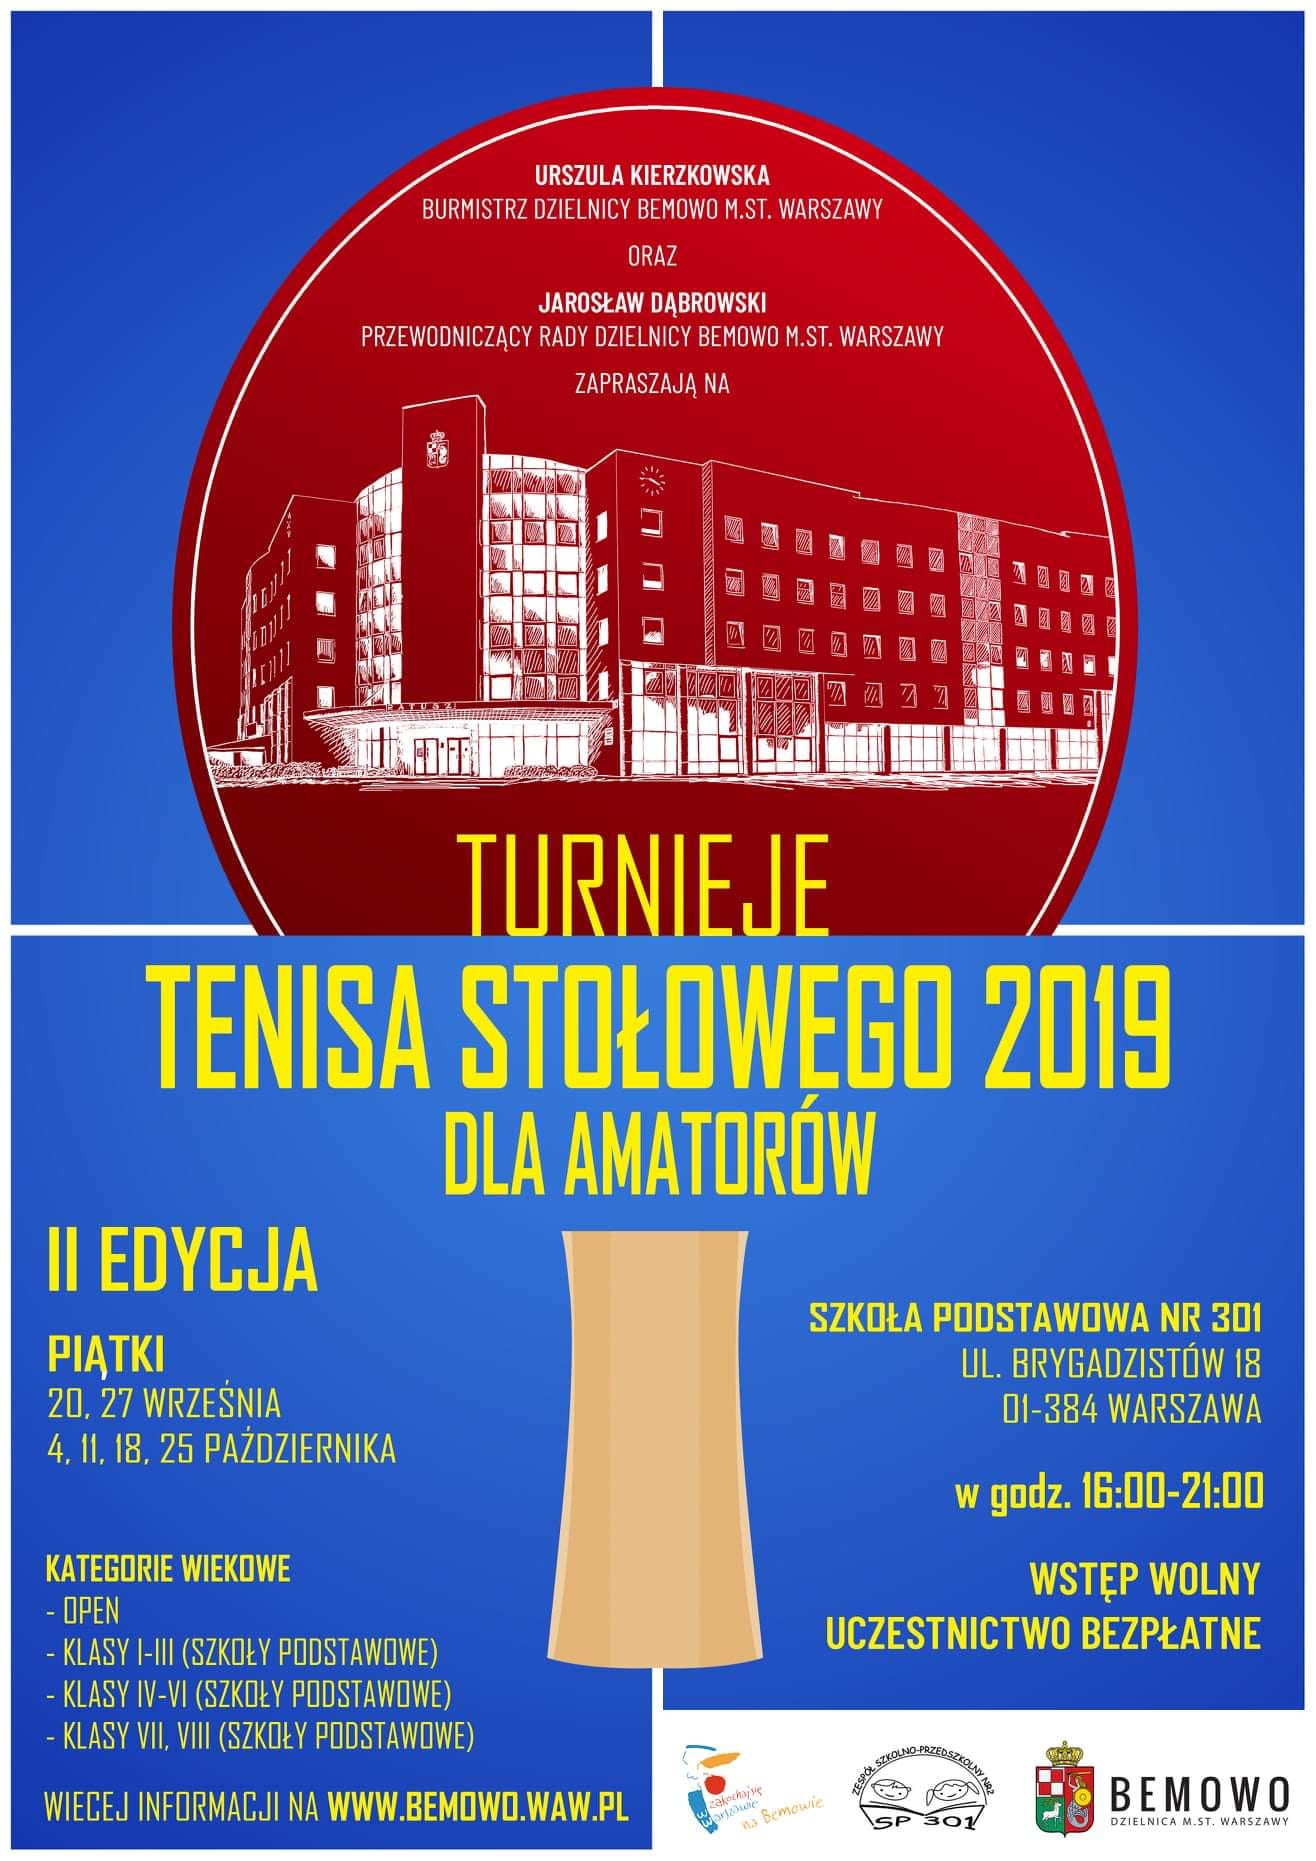 Plakat turnieju Turnieje tenisa stołowego Bemowo - Brygadzistów (20 września 2019) - II edycja